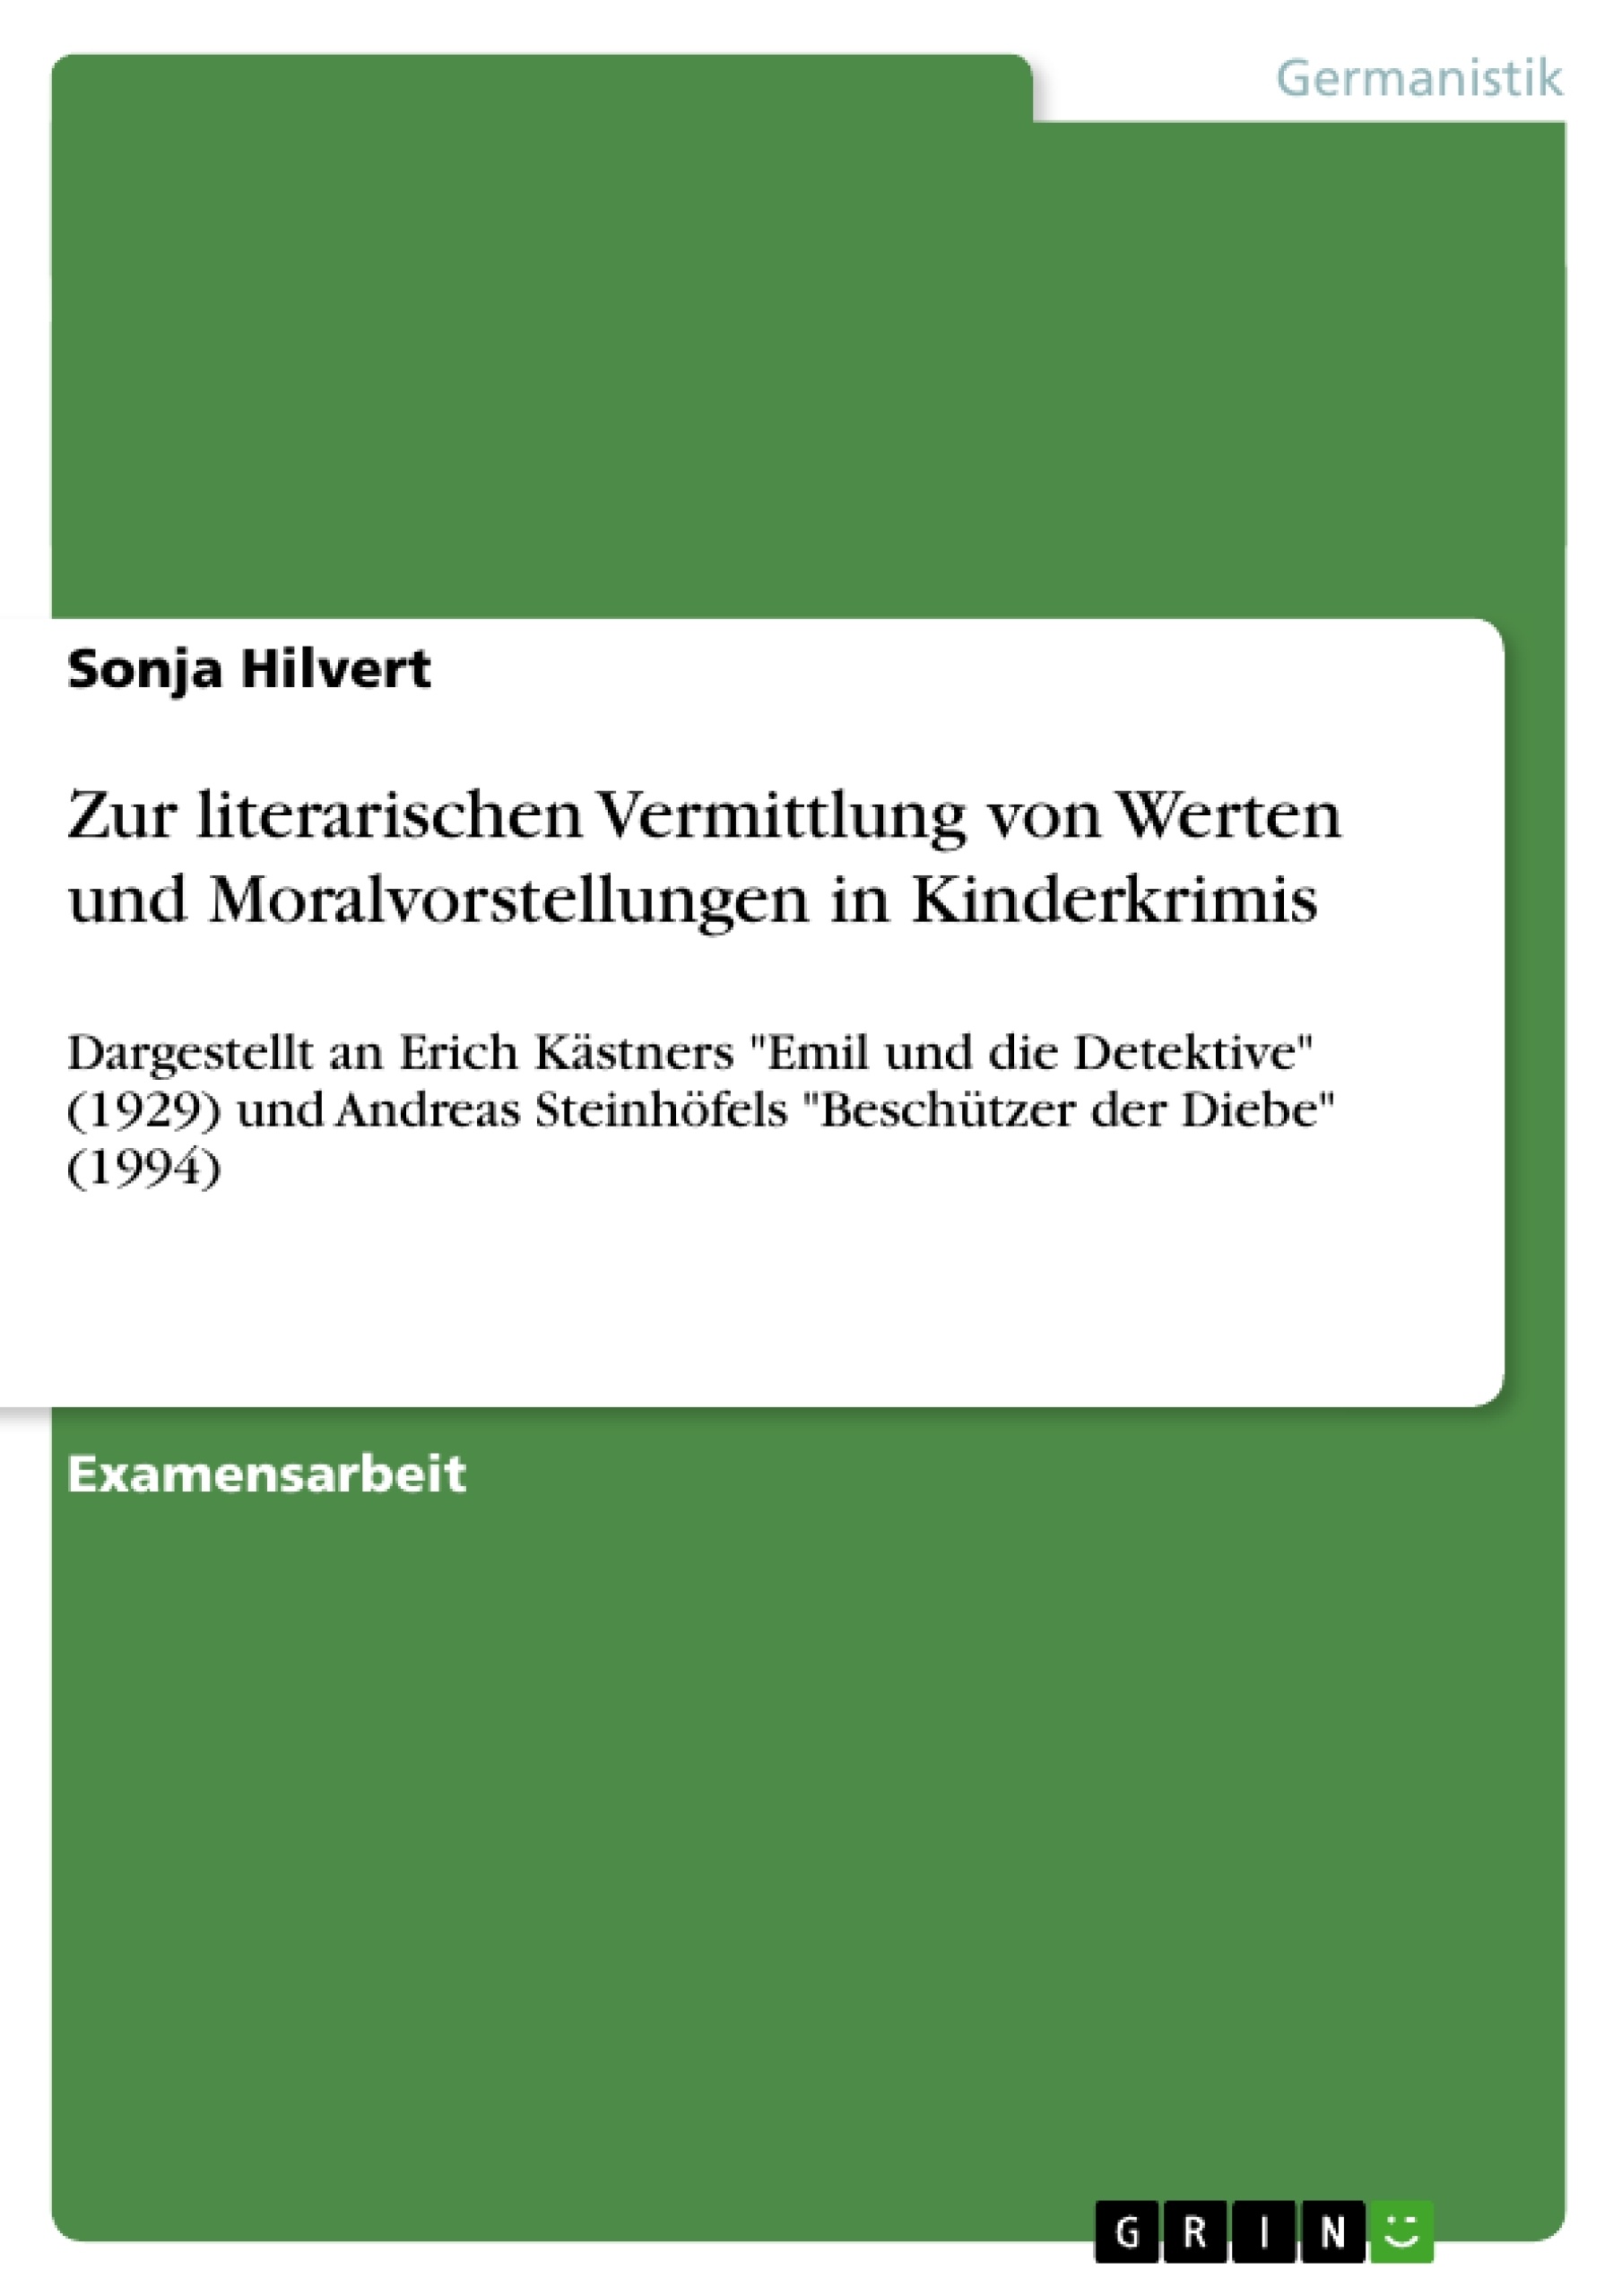 Title: Zur literarischen Vermittlung von Werten und Moralvorstellungen in Kinderkrimis